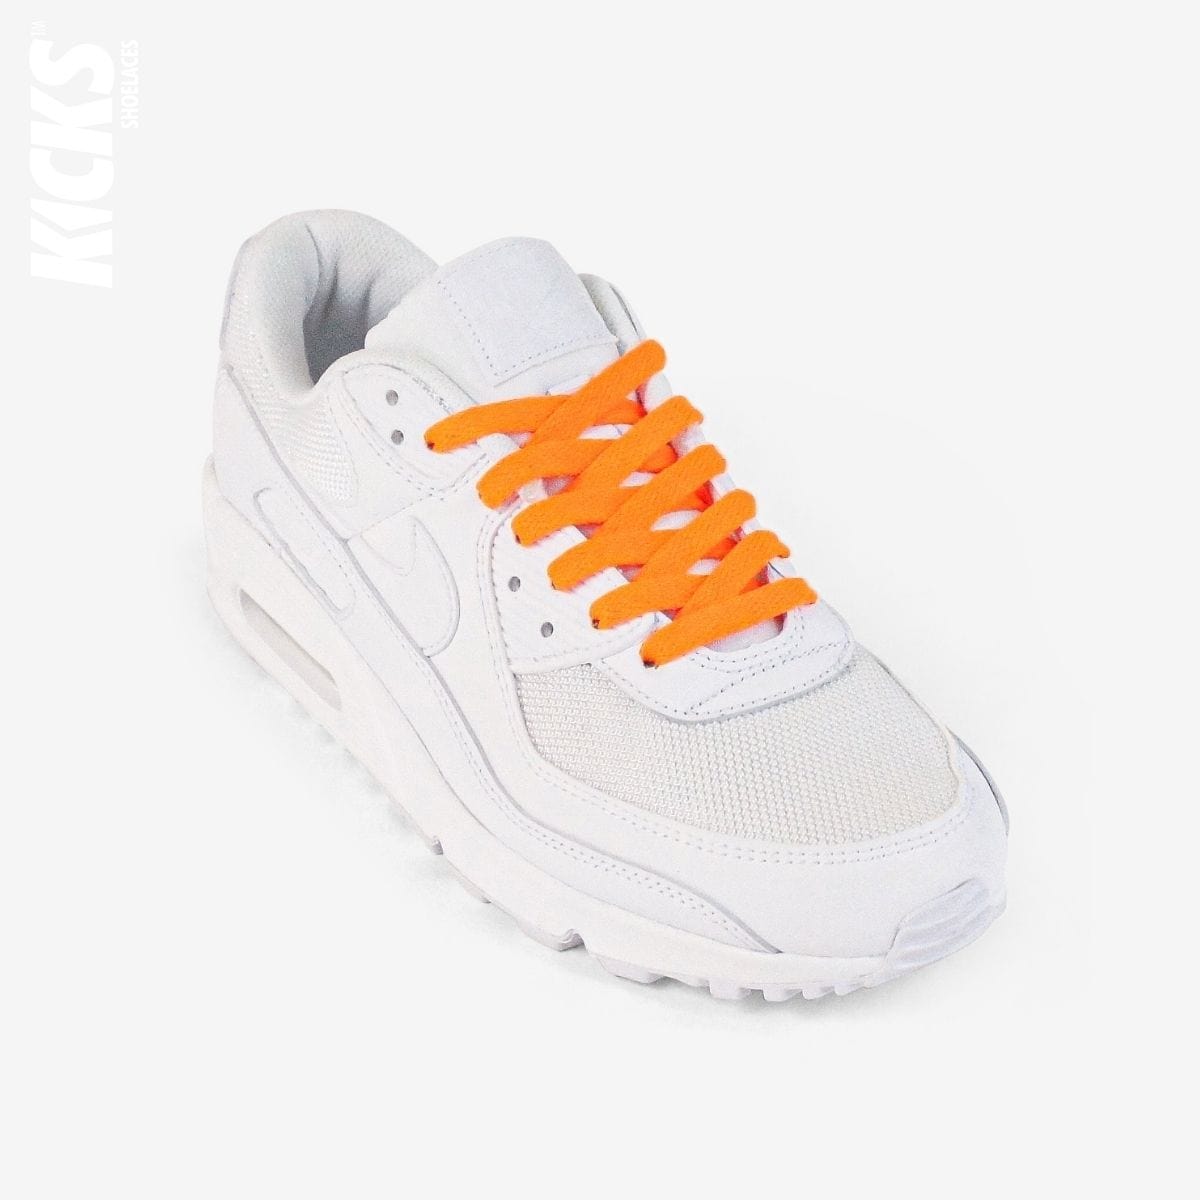 novelty-shoelaces-on-white-sneaker-using-kids-orange-flat-shoelaces